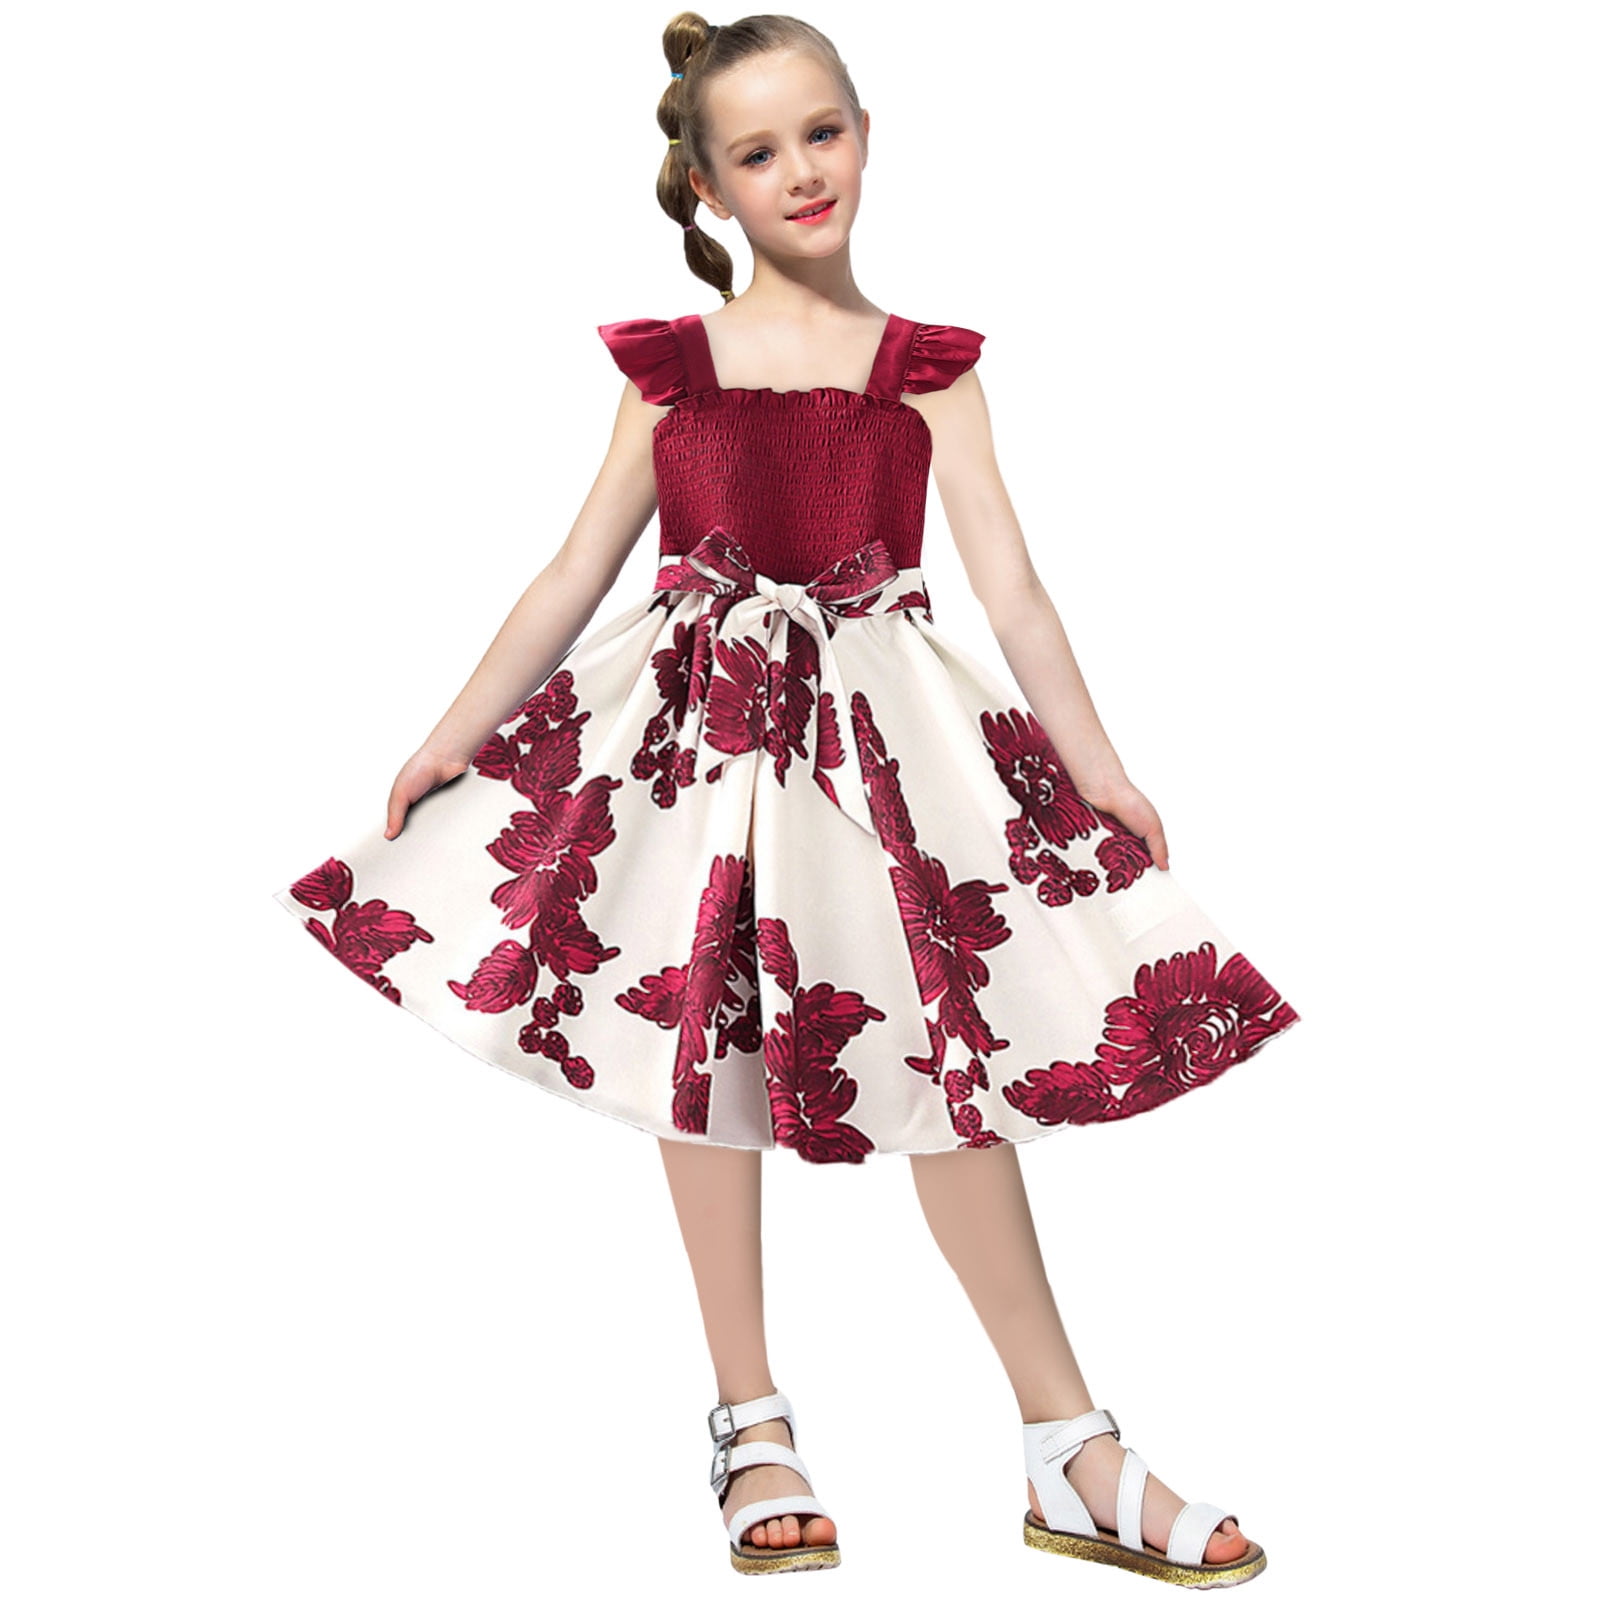 Floral skirt cute summer design kids wear party wear daily use dress for  girls - Walmart.com